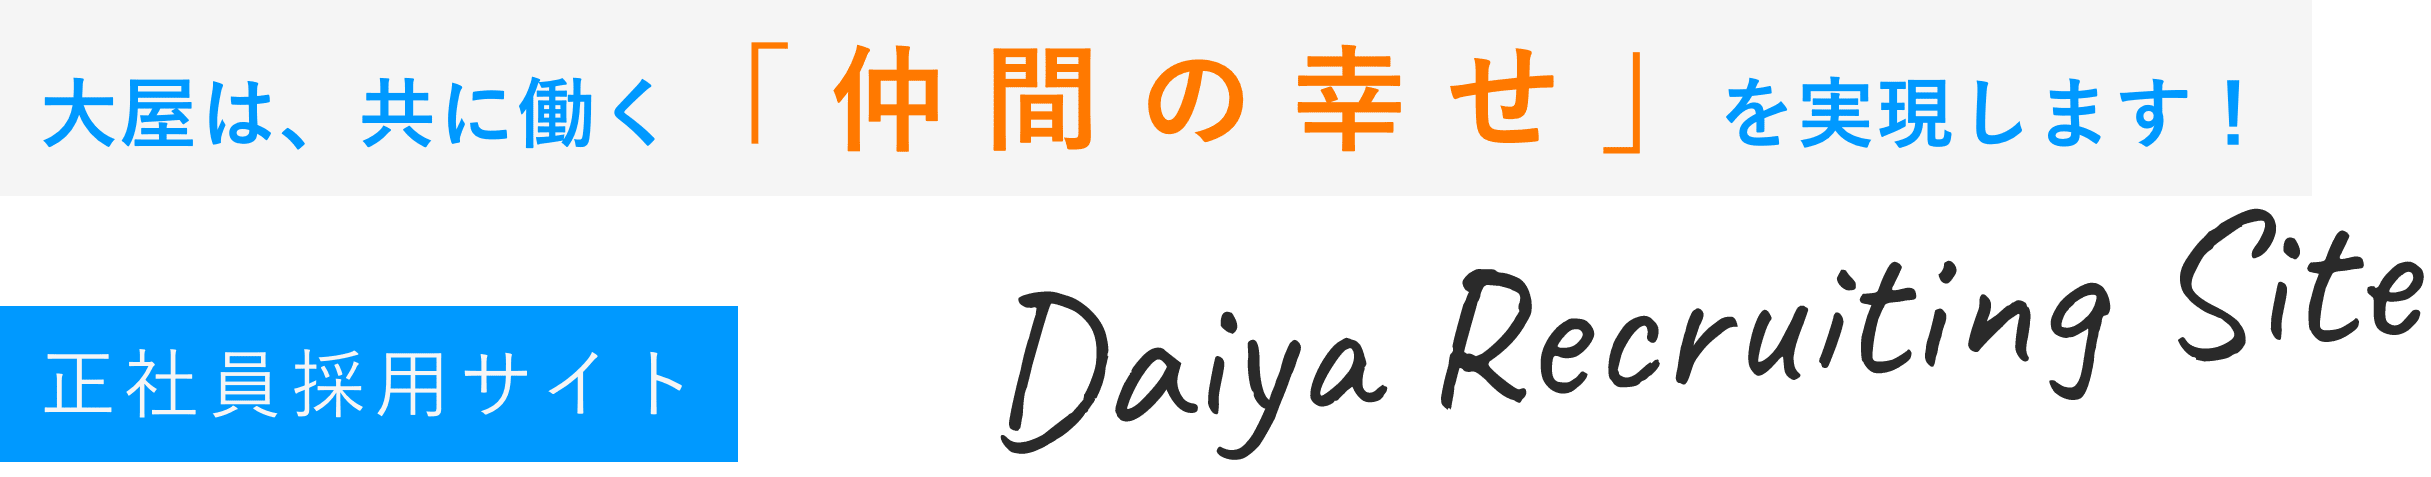 大屋は、共に働く「仲間の幸せ」を実現します！正社員採用サイト Daiya Recruiting Site